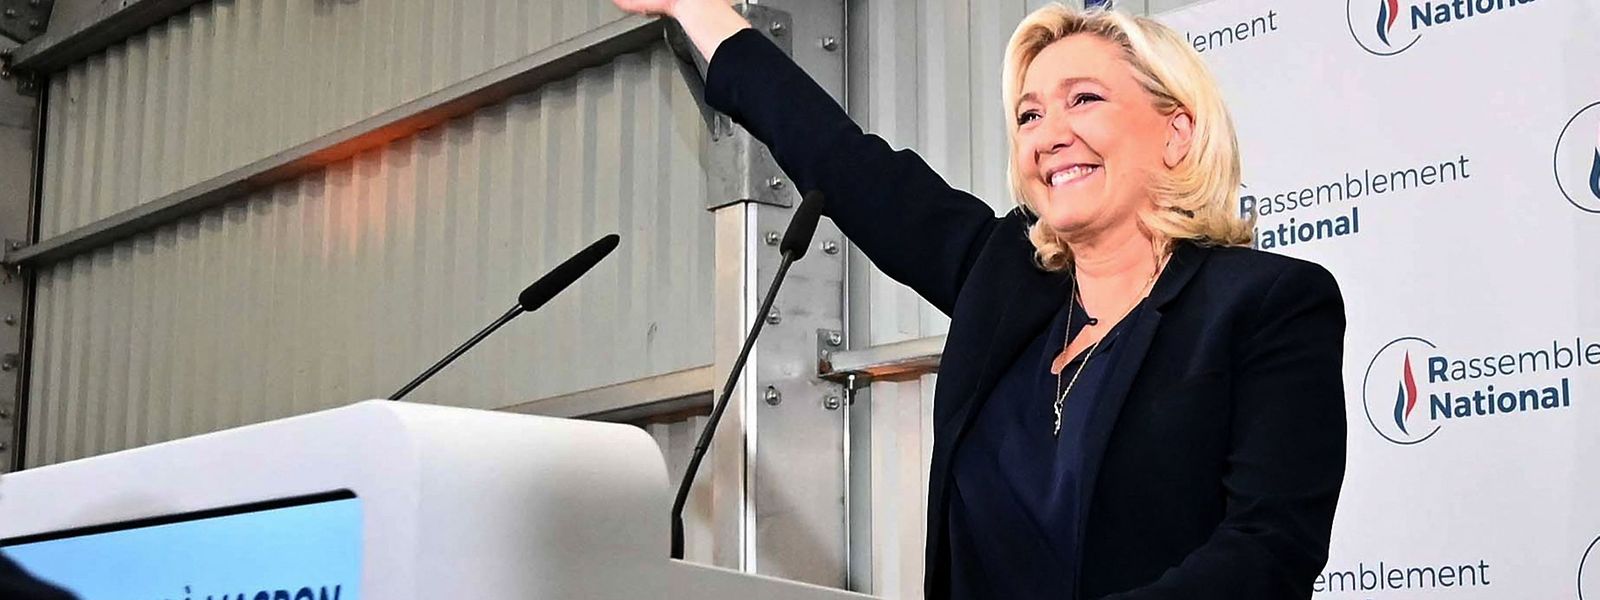 Die rechtsextreme Politikerin Marine Le Pen wird Fraktionschefin des Rassemblement National in der Assemblée Nationale.